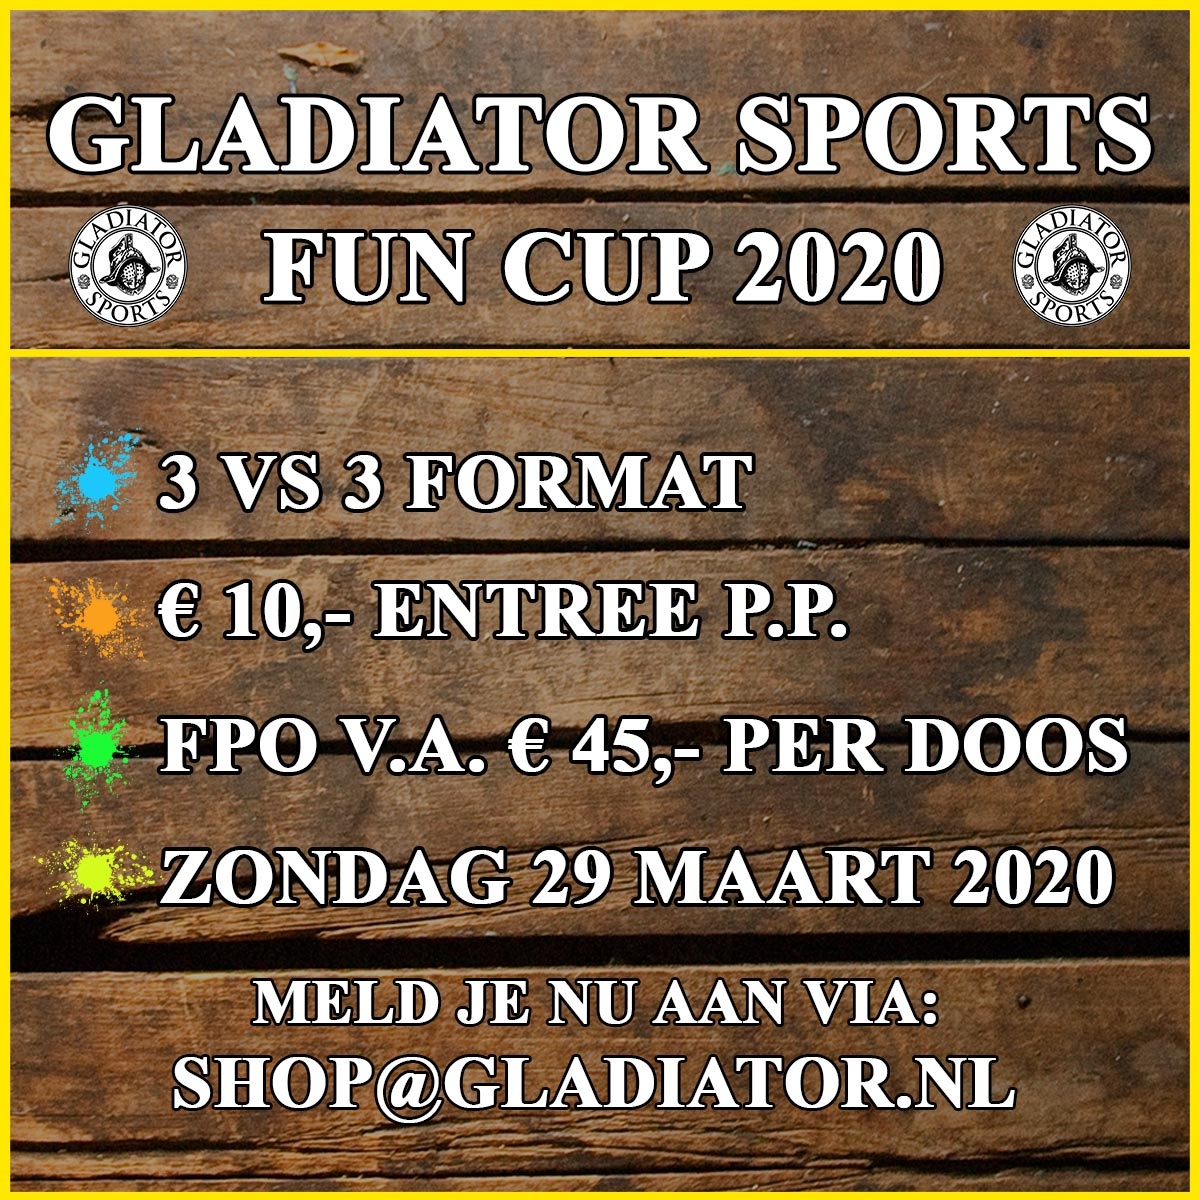 Gladiator Sports Fun Cup 2020 29 maart